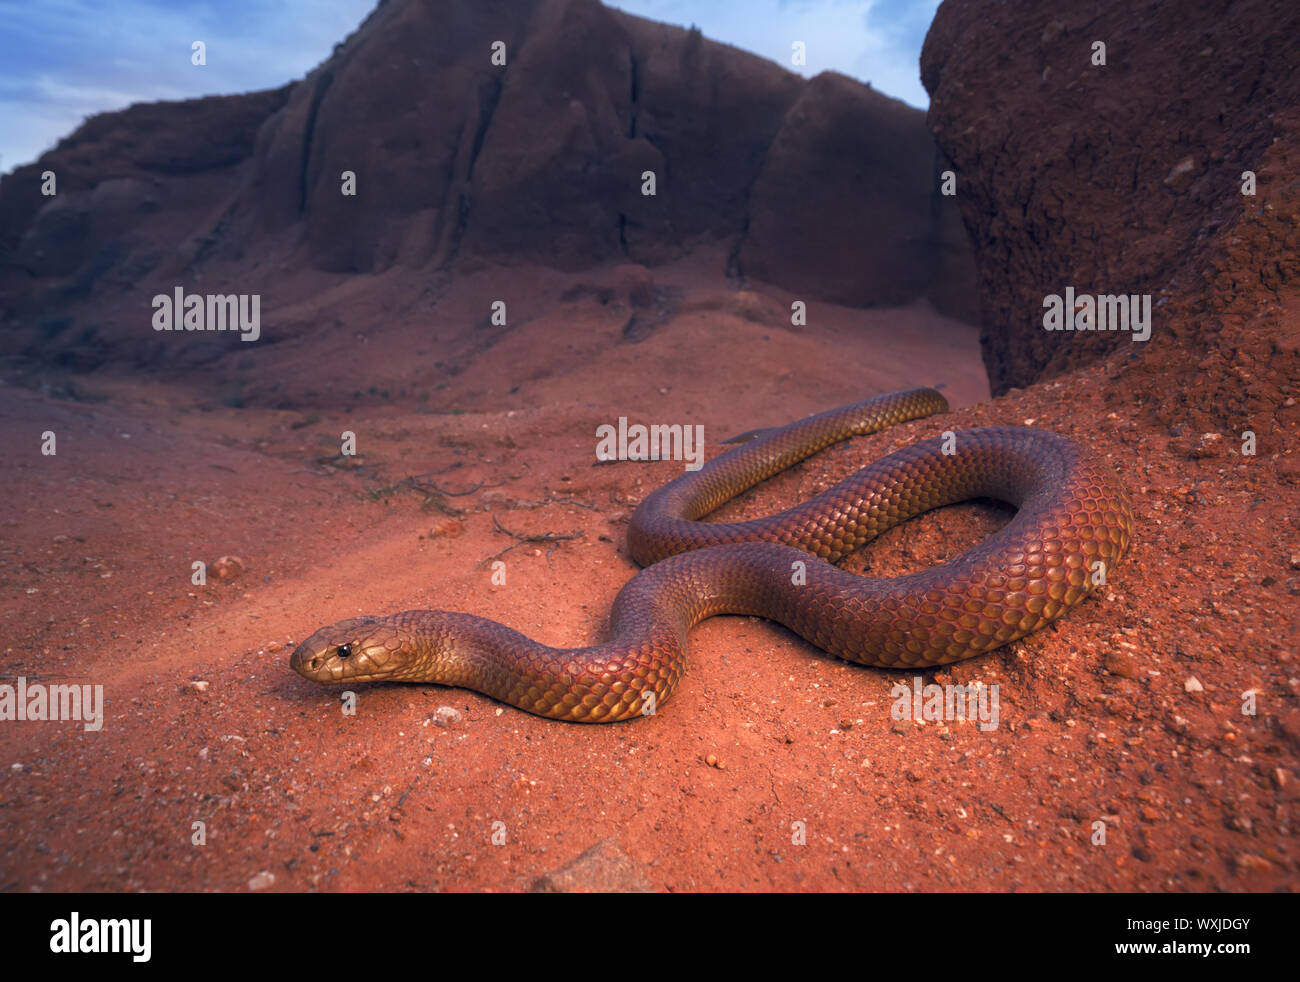 King brown snake (Pseudechis australis), Australia Stock Photo